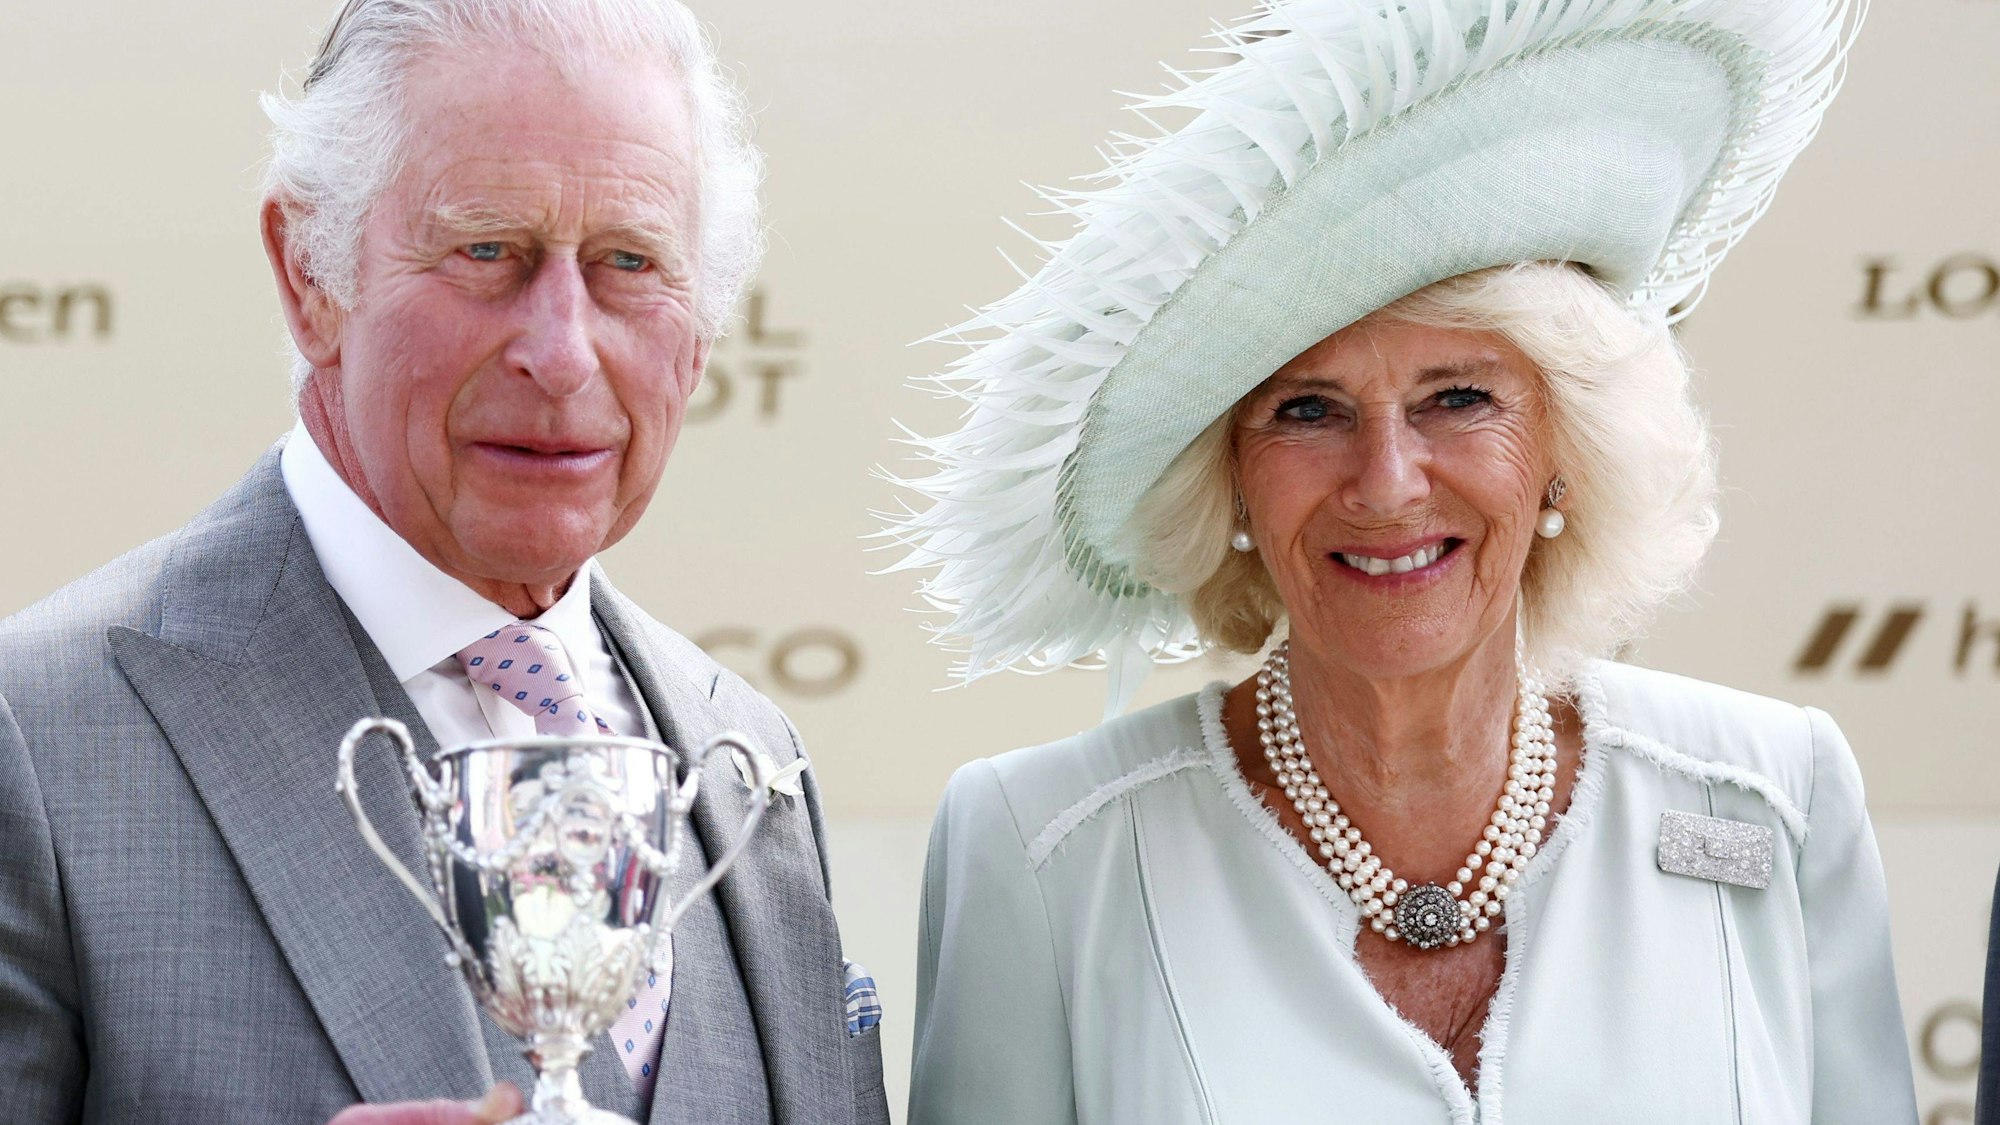 König Charles III. und Königin Camilla lächeln für die Fotografen.